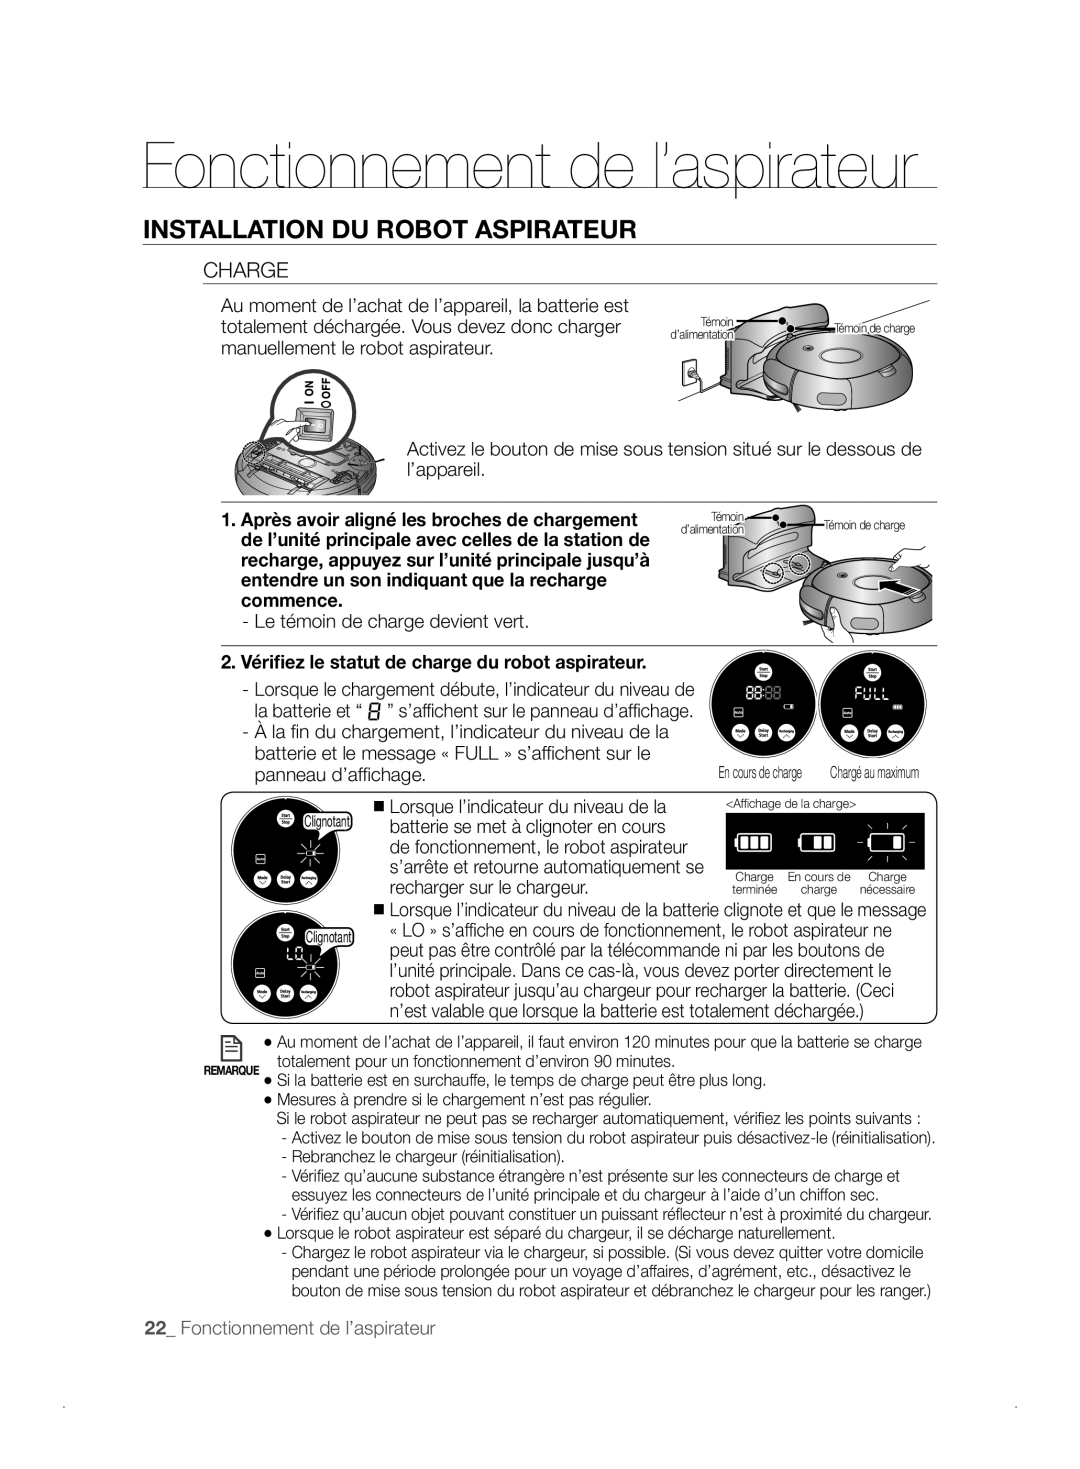 Samsung VCR8841T3B/XEF manual Fonctionnement de l’aspirateur, Installation Du Robot Aspirateur, Charge, commence 